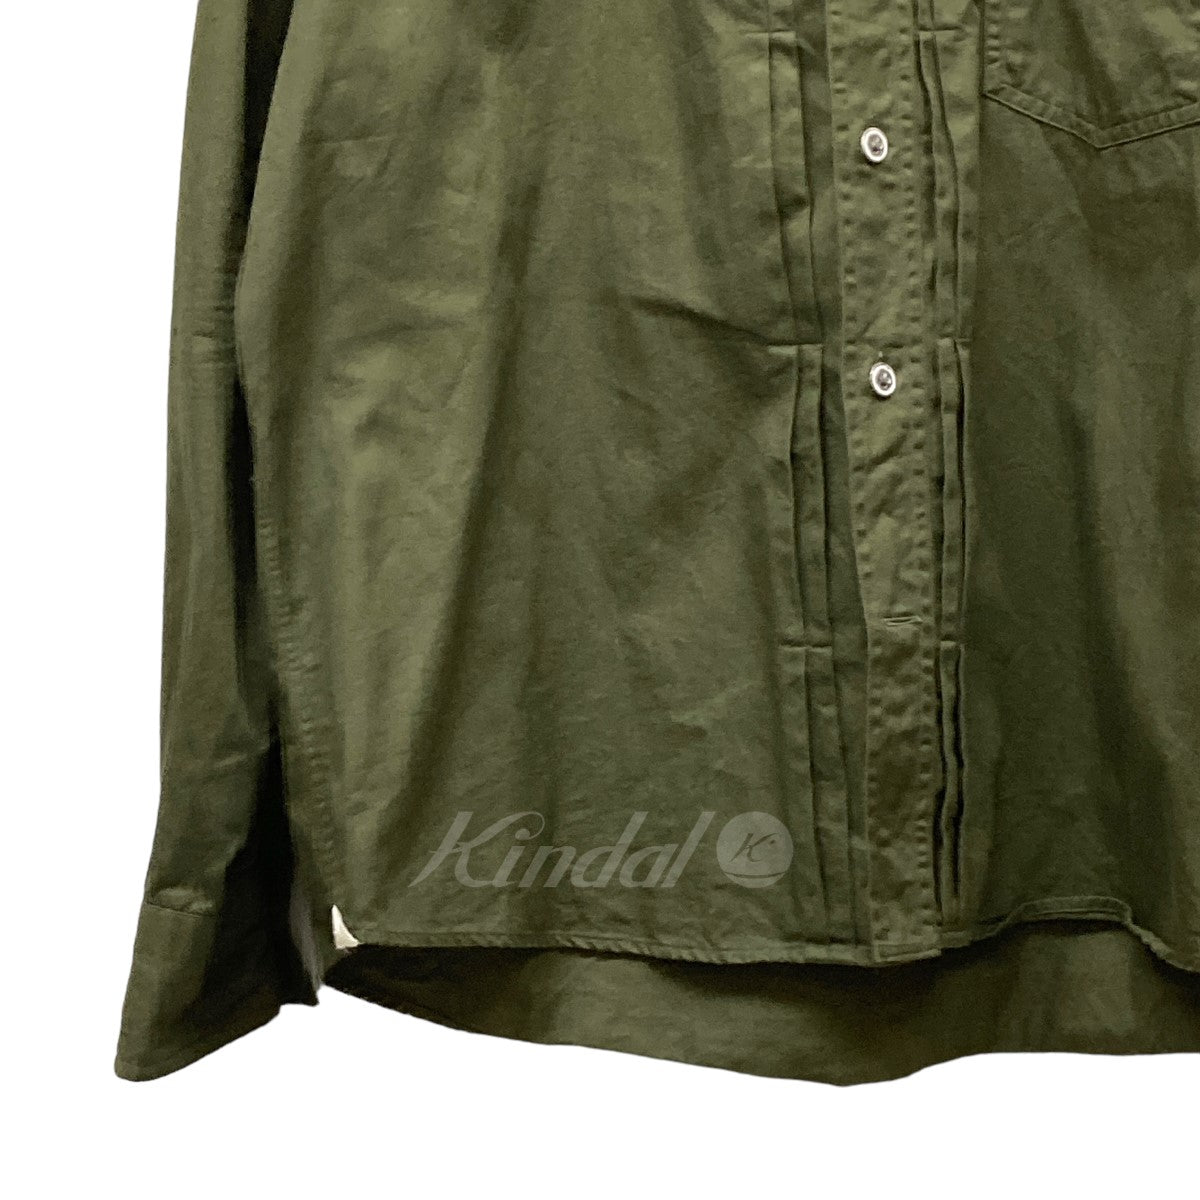 giannetto(ジャンネット) フロントタックシャツ オリーブ サイズ XL